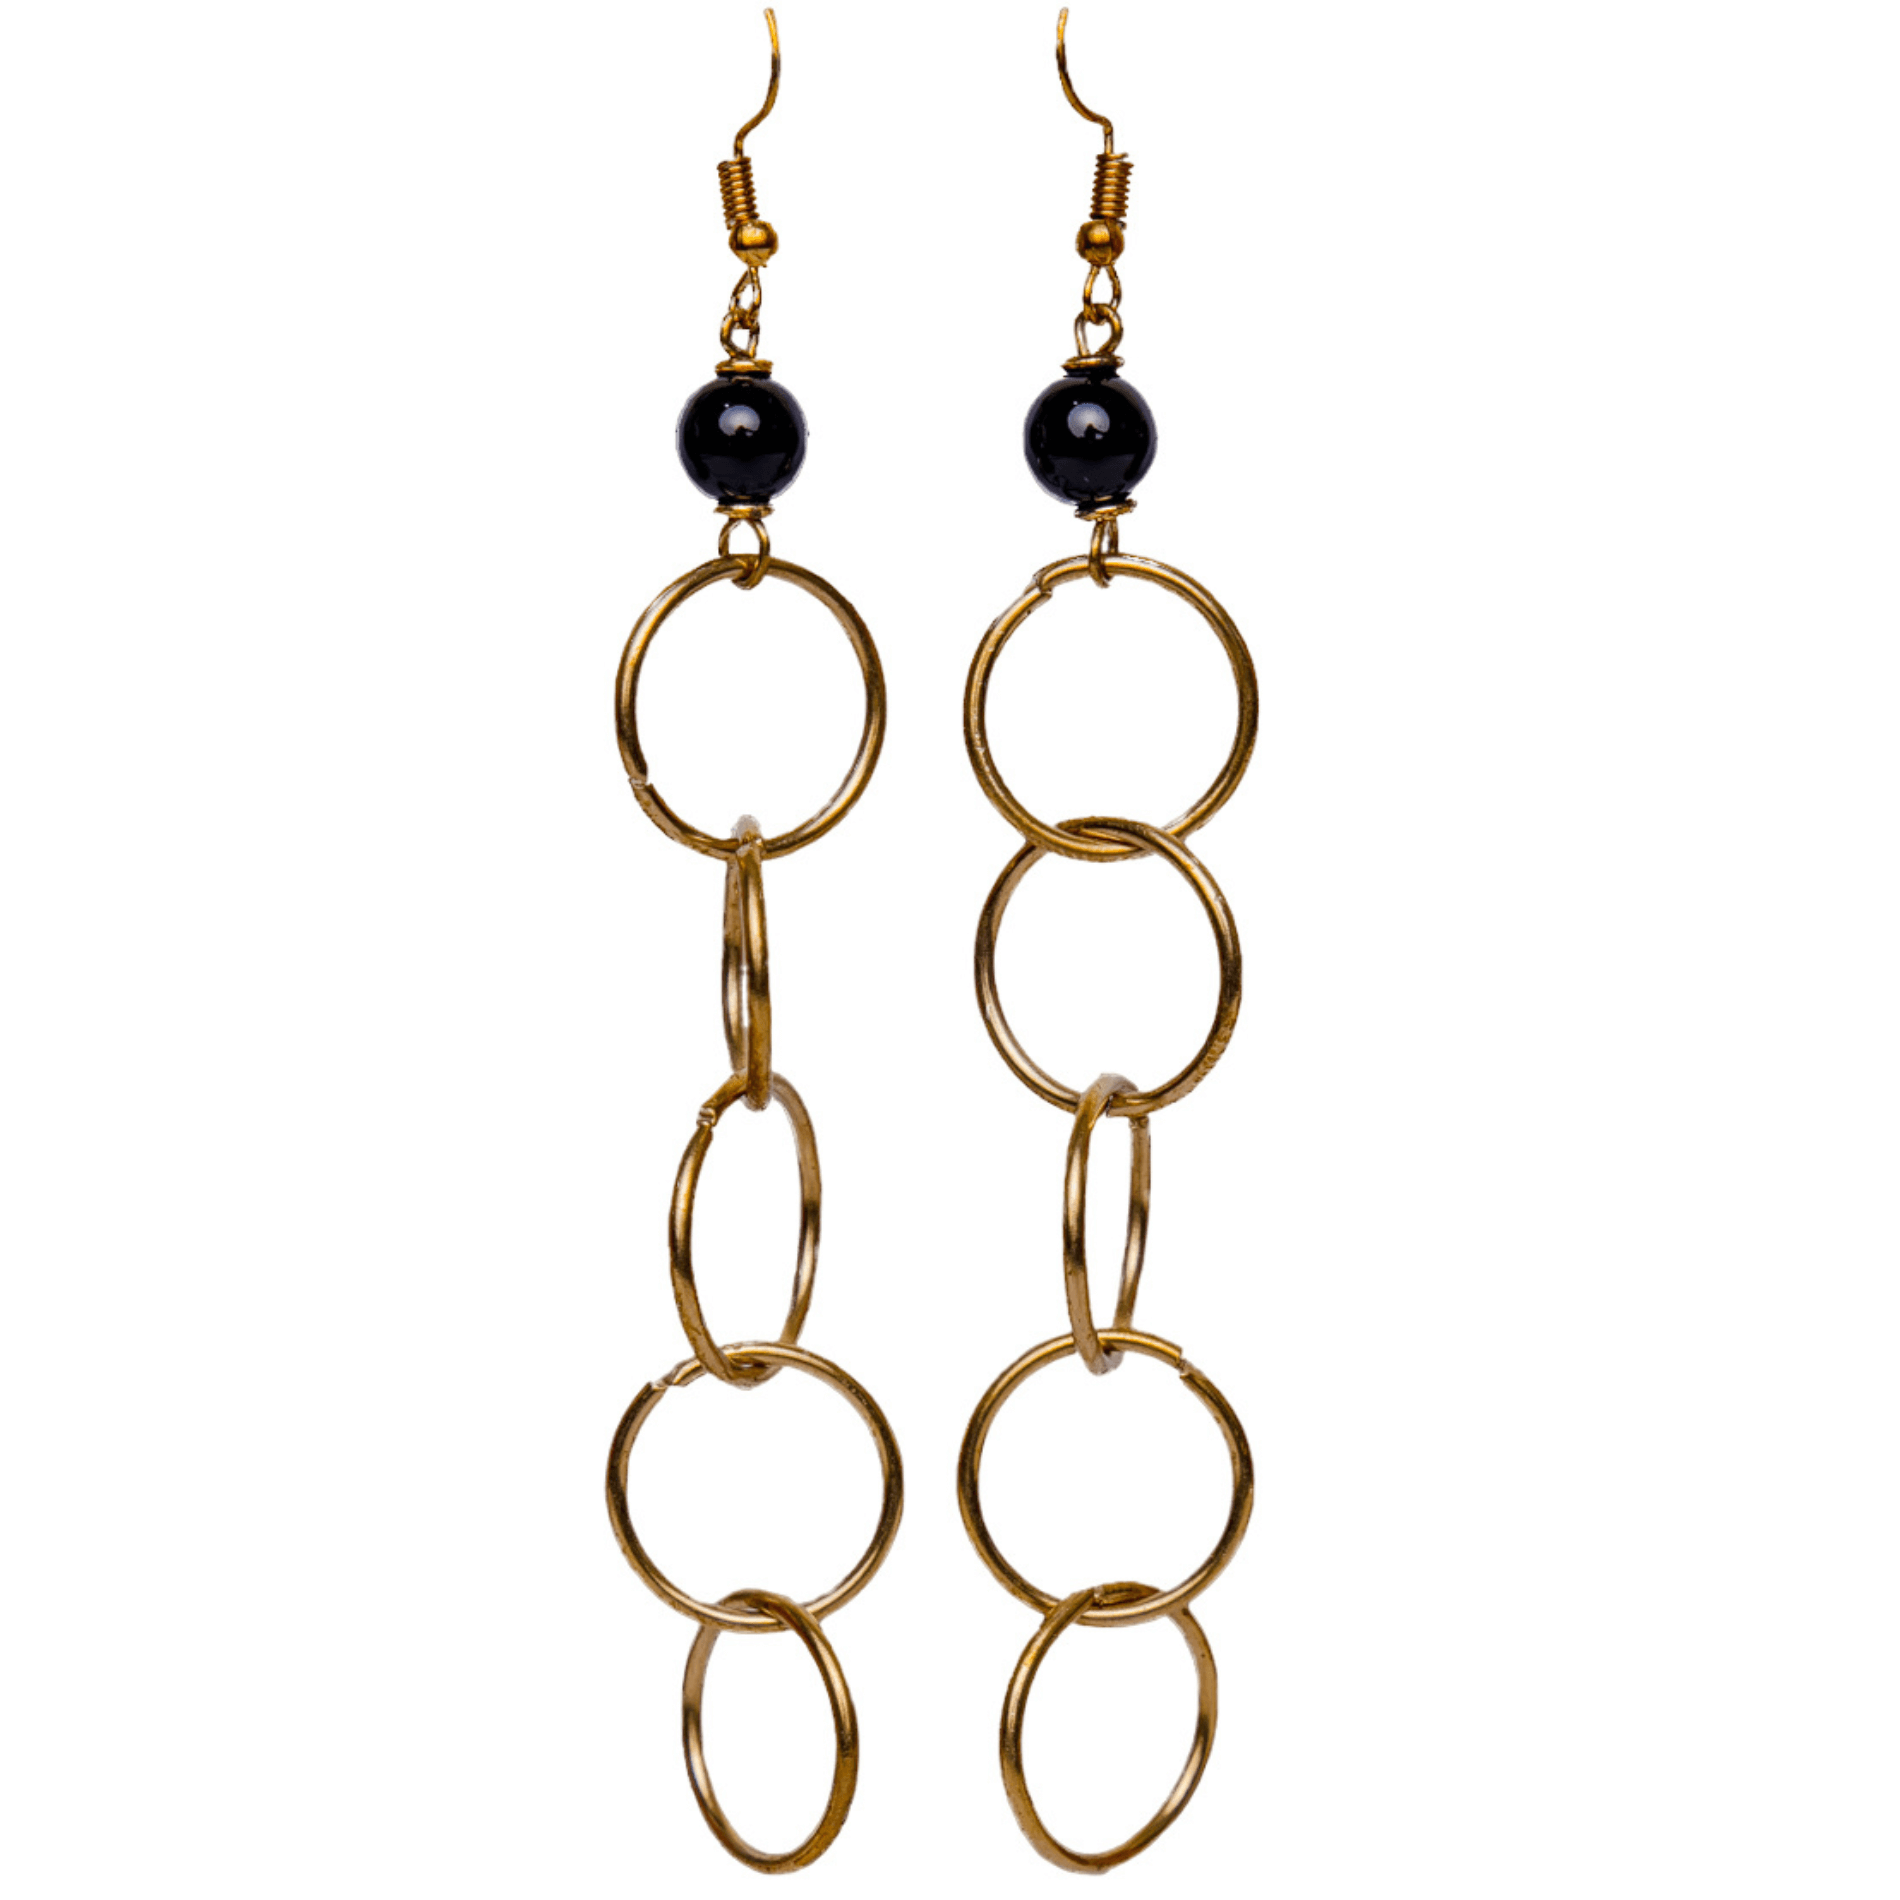 interlocking hoop earrings with black bead